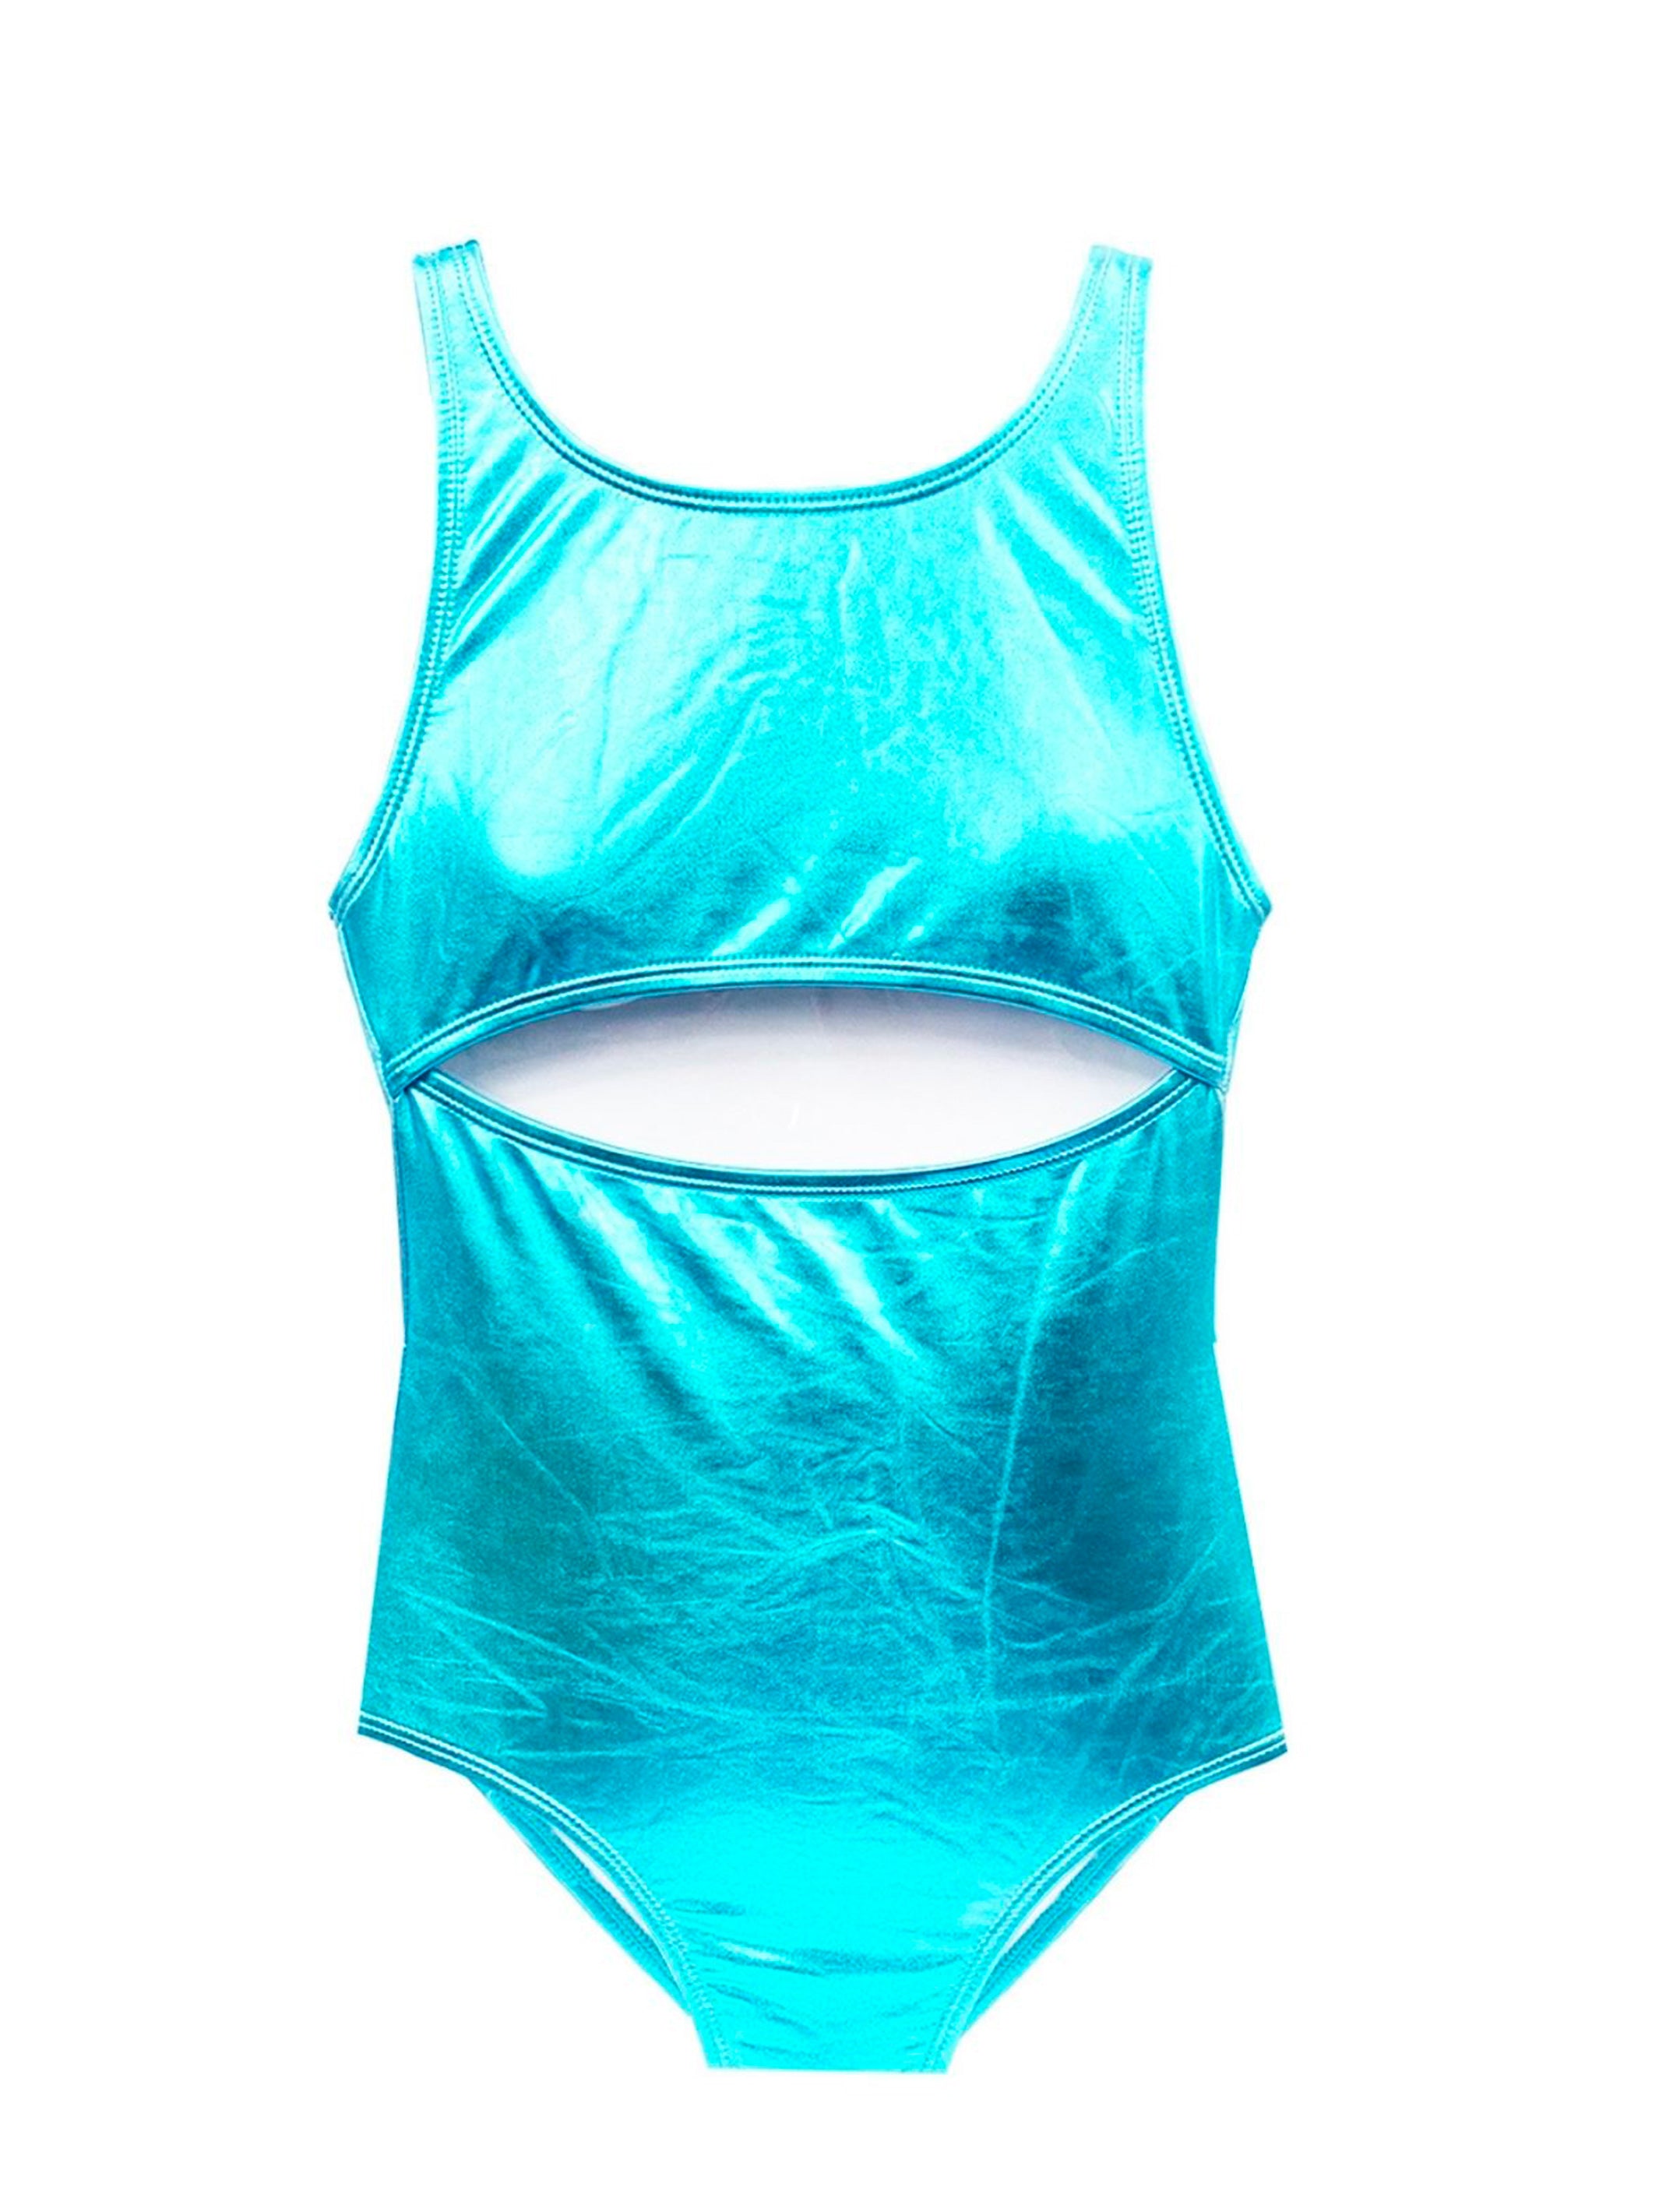 IRIS - Metallic Blue Foil One Piece Swimsuit